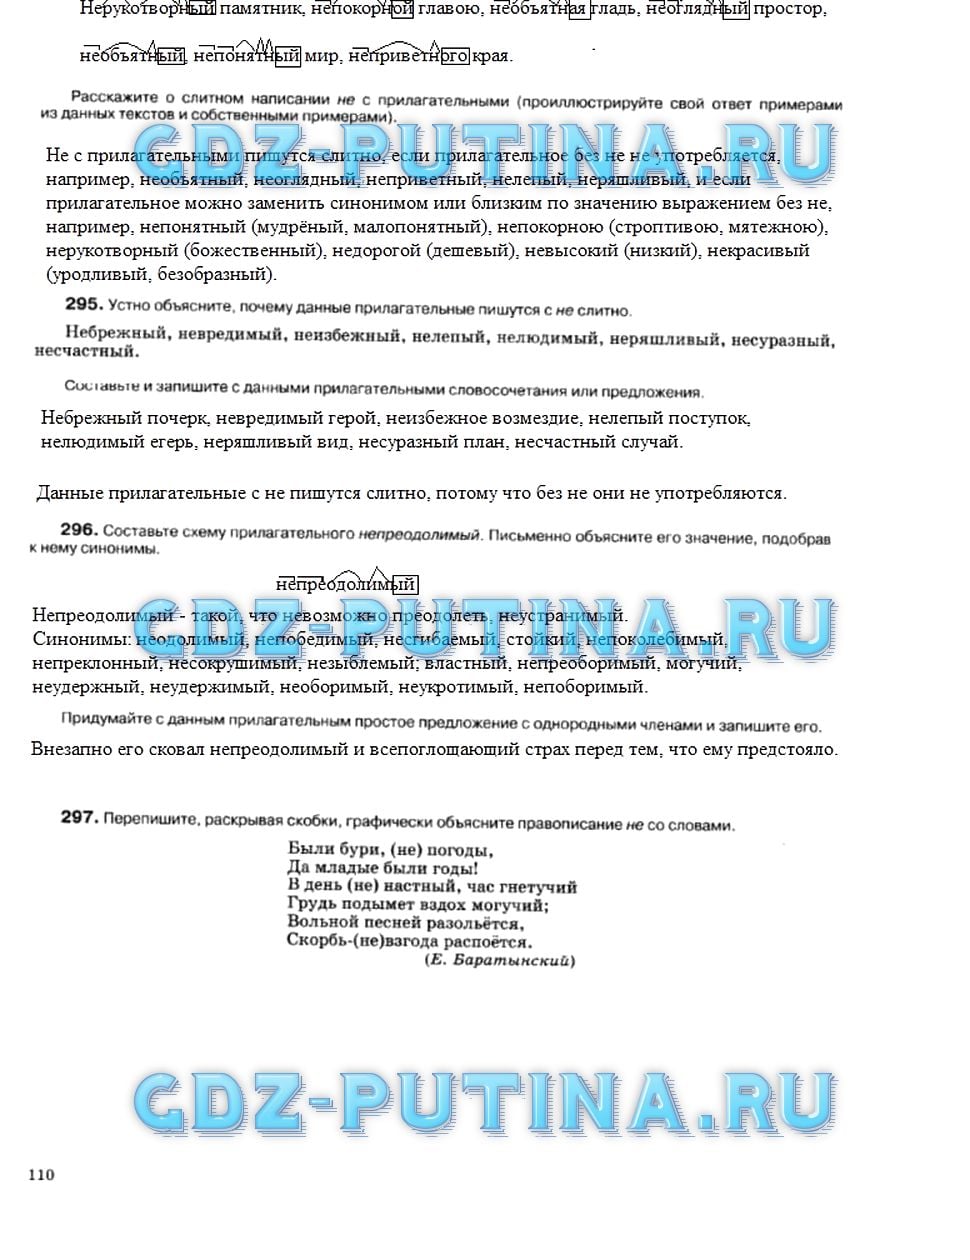 гдз 5 класс рабочая тетрадь страница 110 русский язык Ларионова